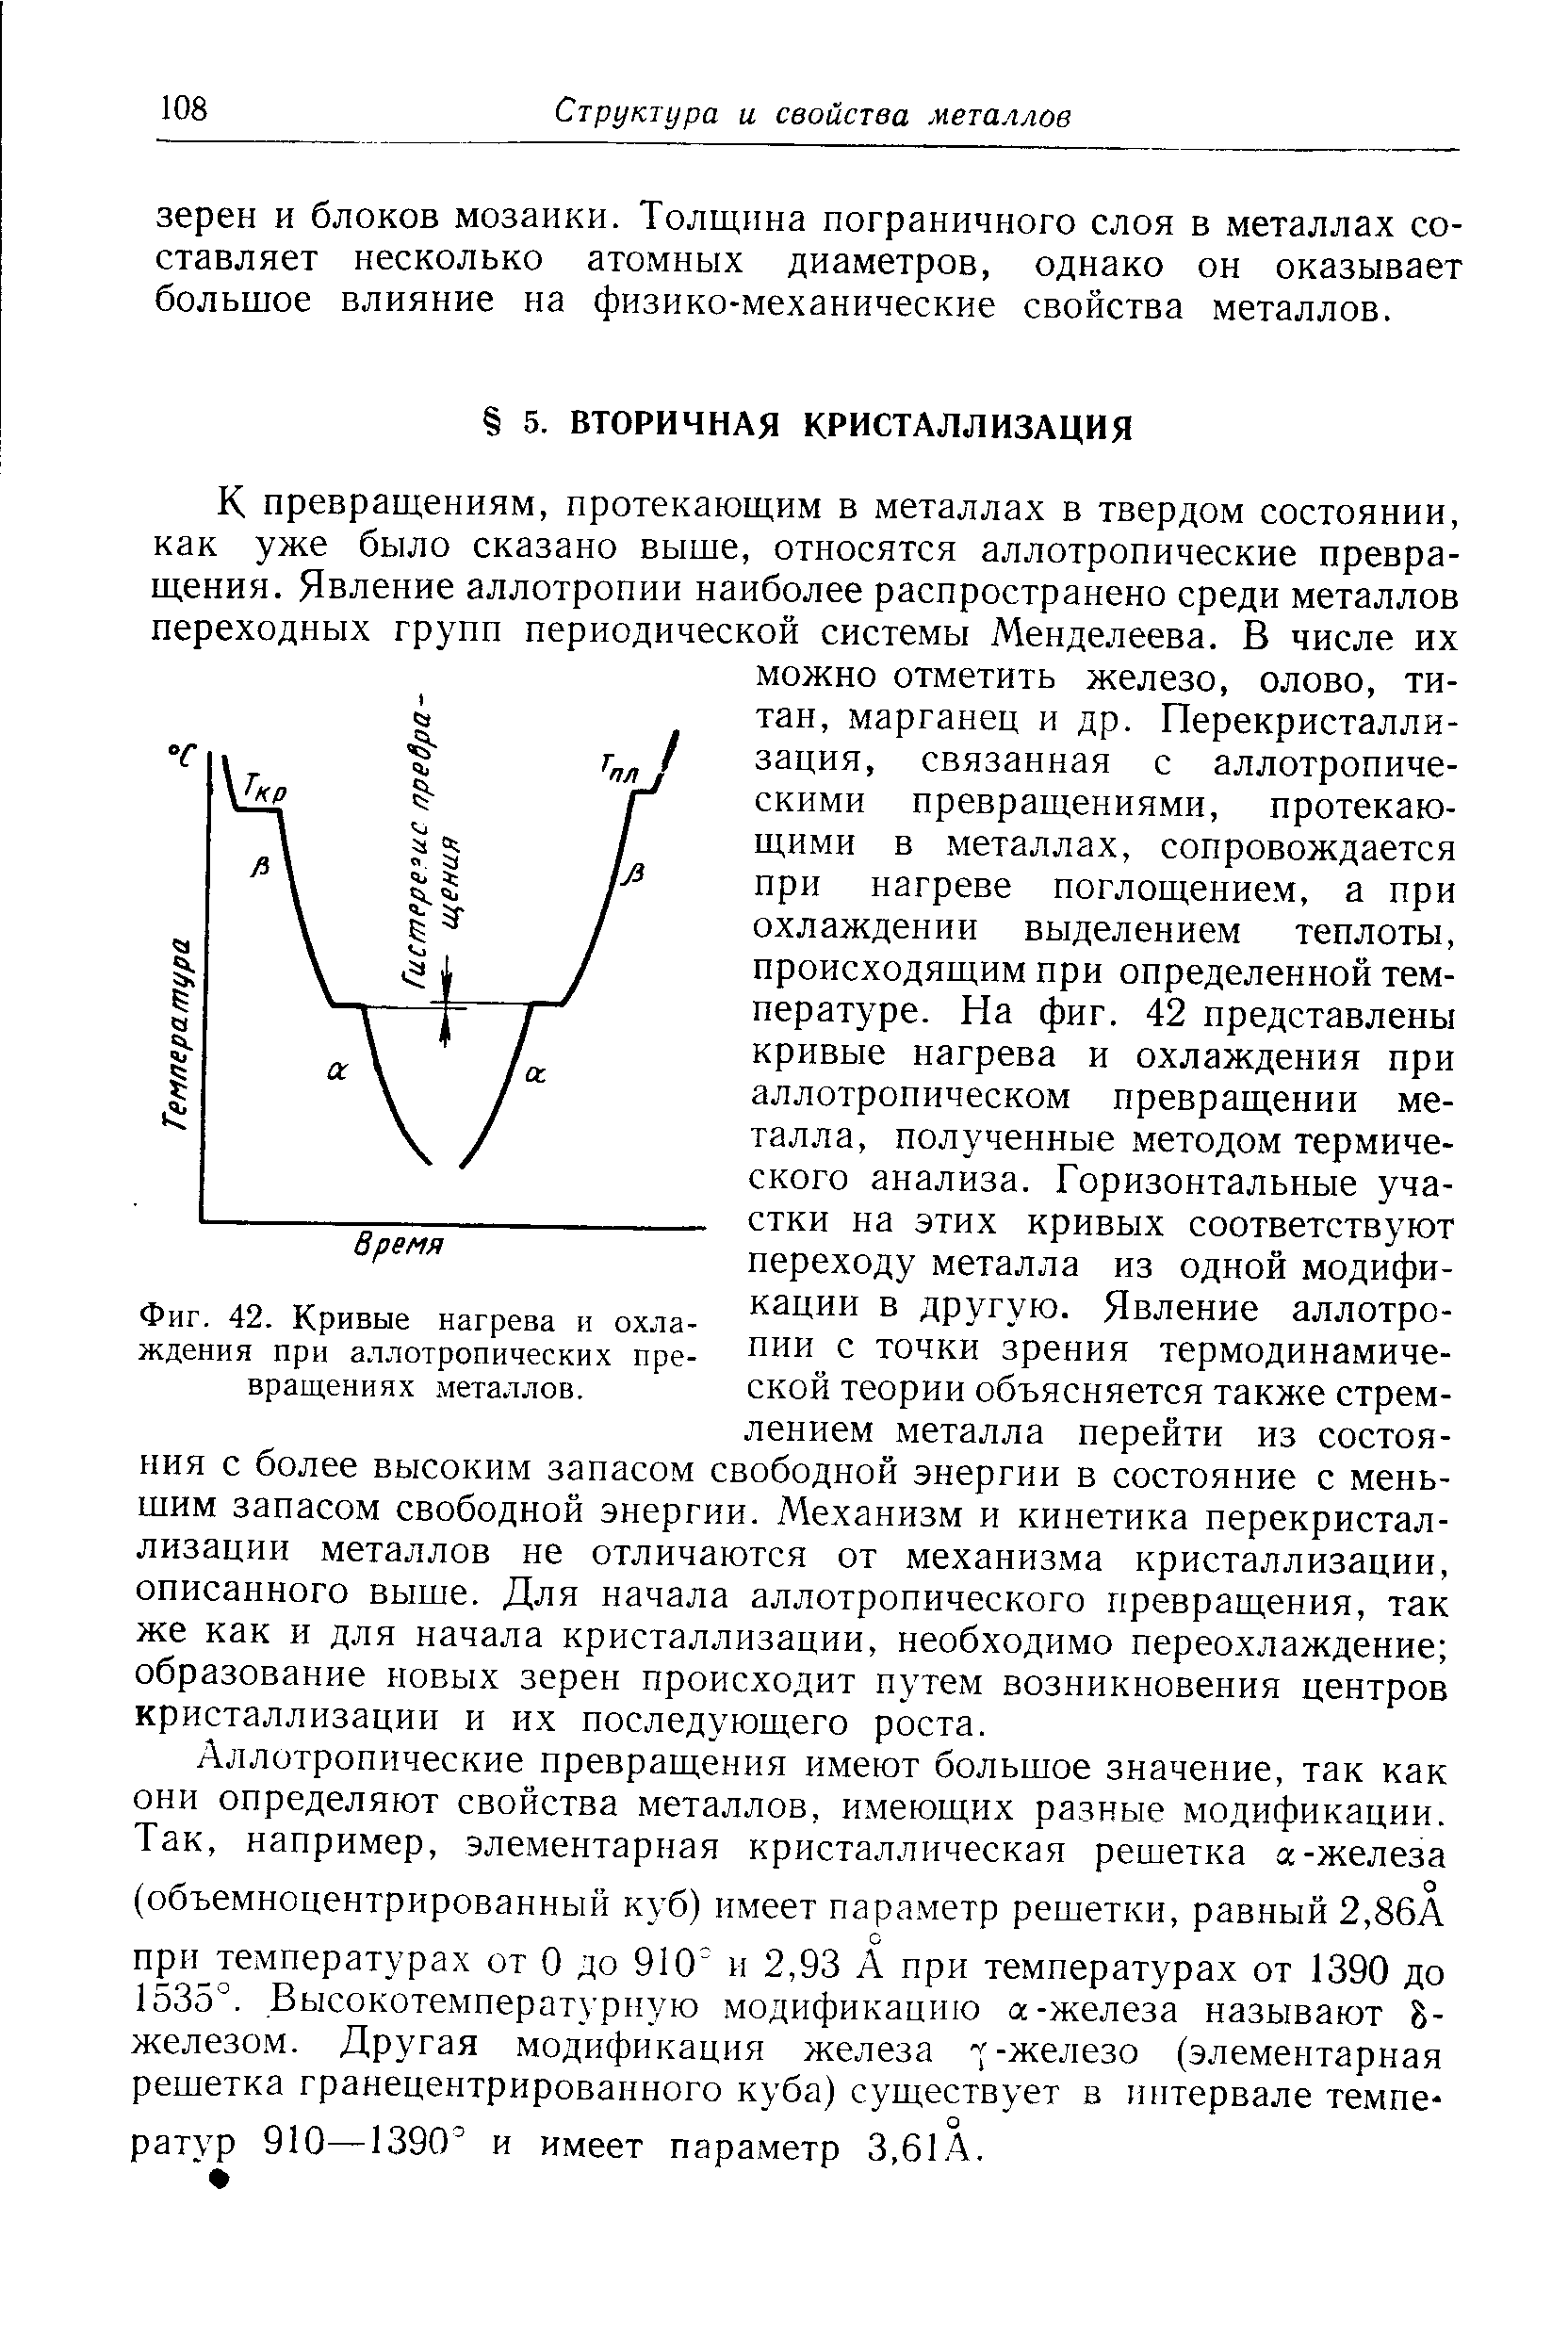 Фиг. 42. Кривые нагрева и охлаждения при <a href="/info/274641">аллотропических превращениях</a> металлов.
